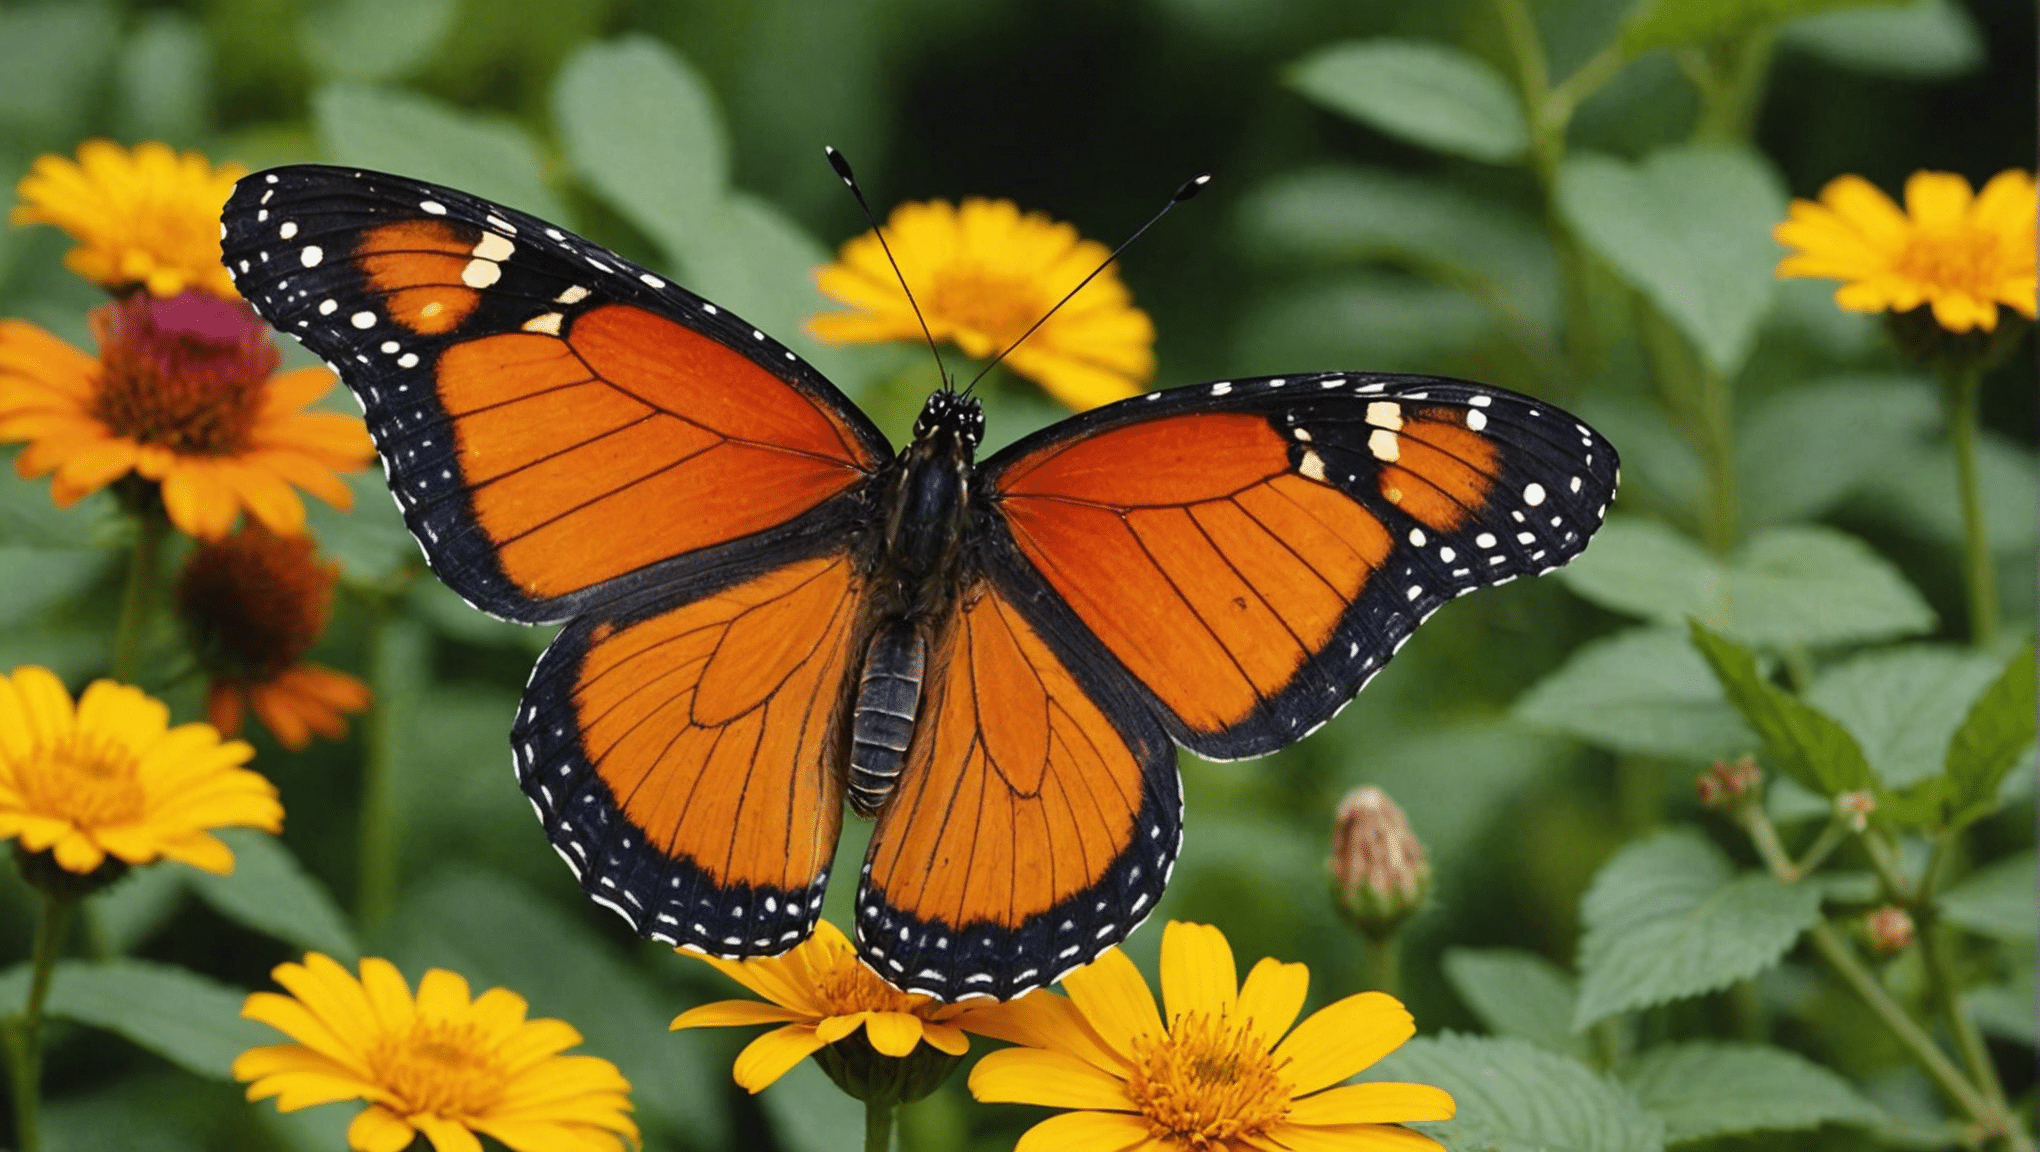 descubra fatos divertidos e fascinantes sobre borboletas com nosso conteúdo envolvente.